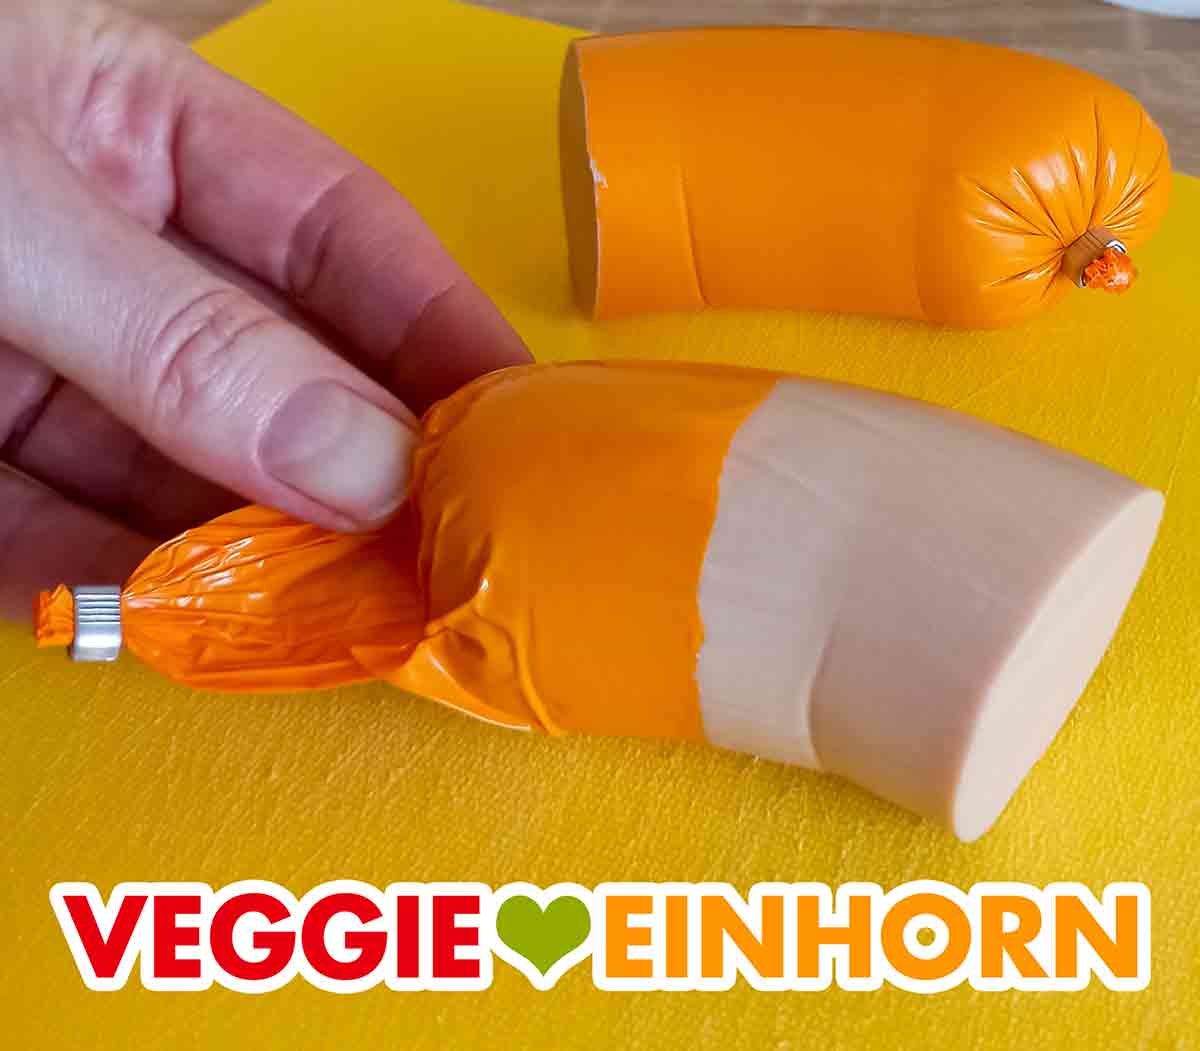 Orange Wursthülle der veganen Fleischwurst von Edeka